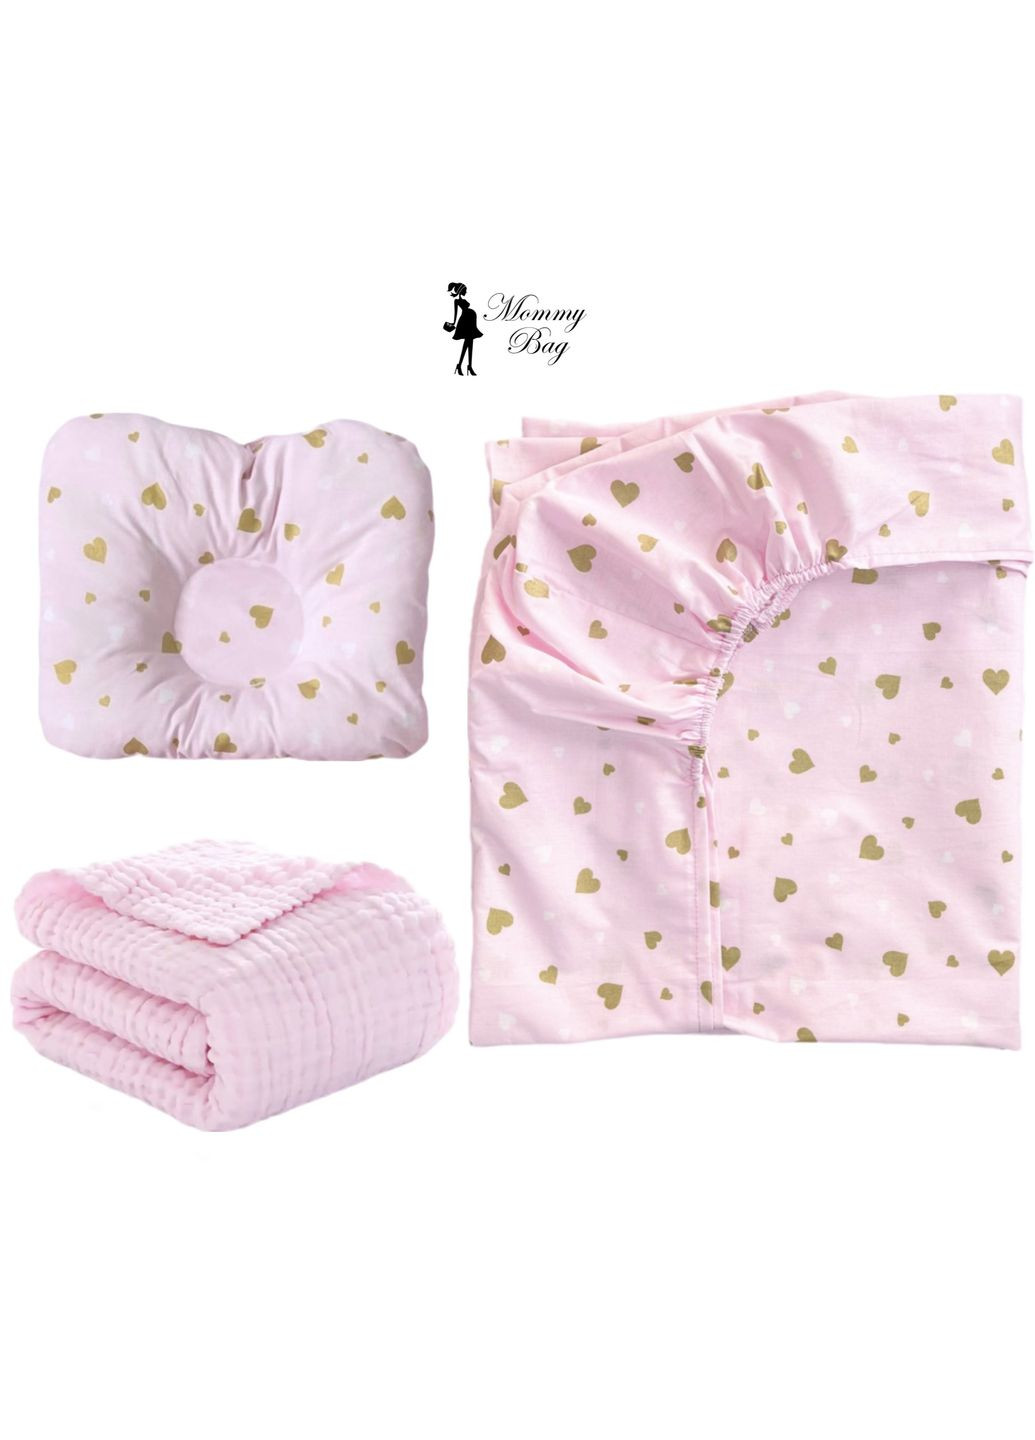 Набор 3в1 в детскую кроватку RoyalBaby – №16 Розовый с сердечками (глиттер) с муслиновым пледом Mommy Bag (287340111)